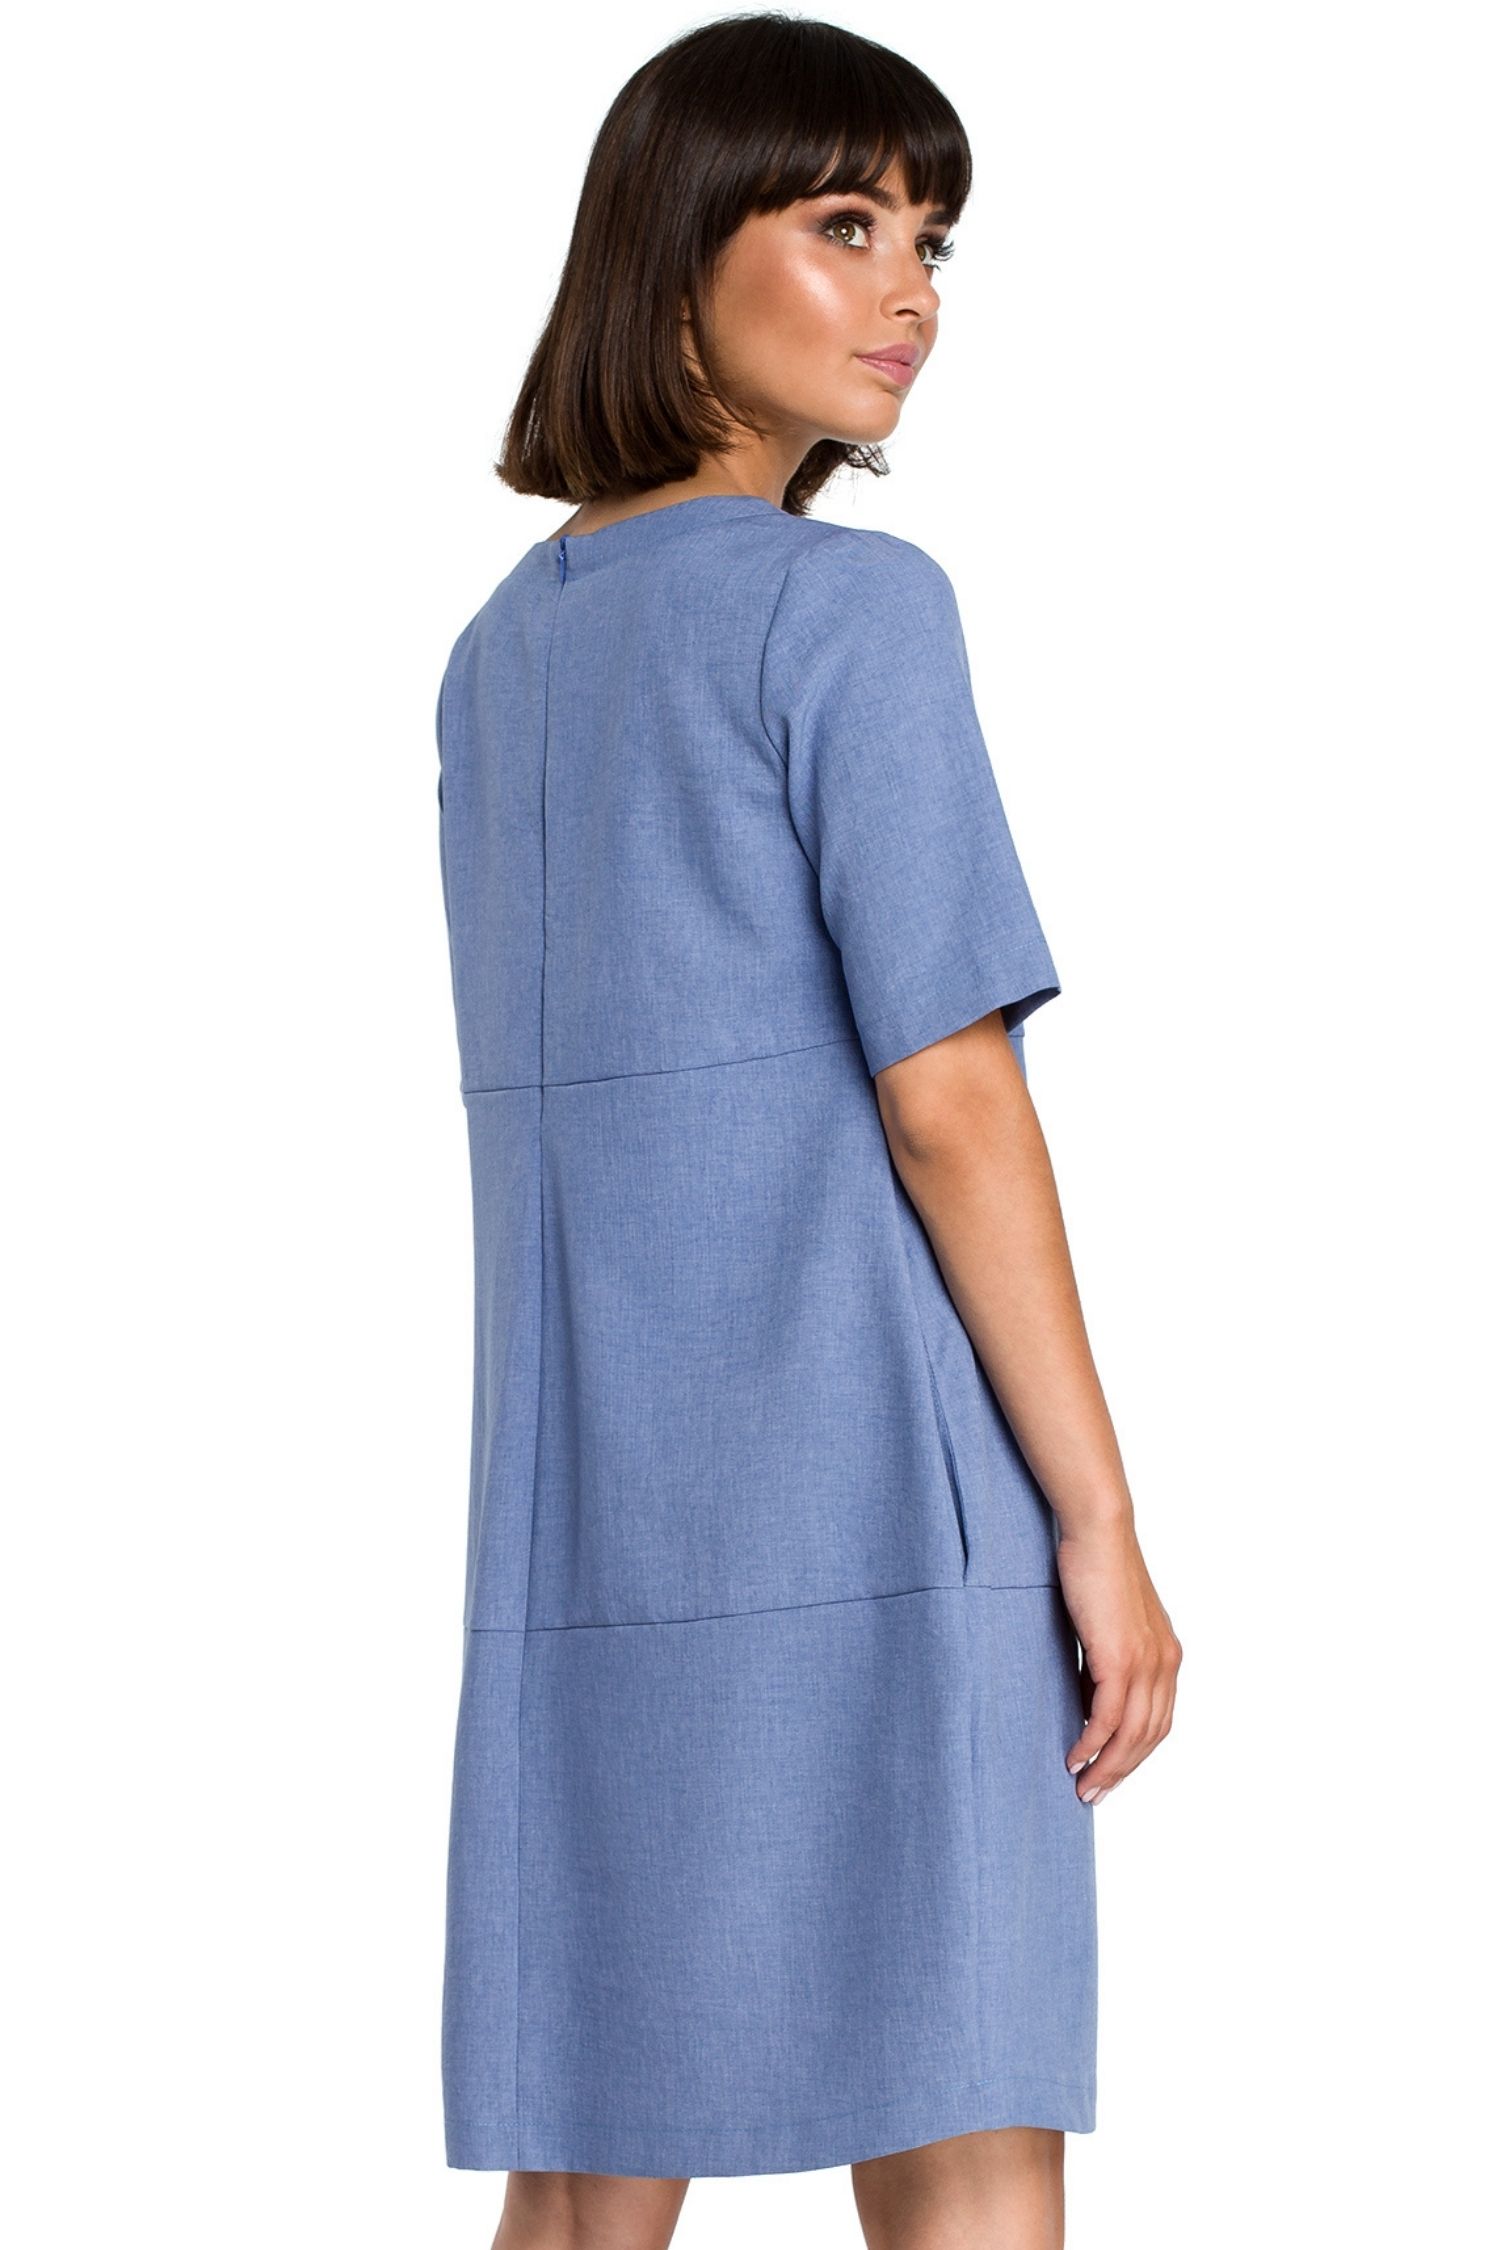 Opis: Lniana sukienka na lato bombka oversize z kieszeniami niebieska.